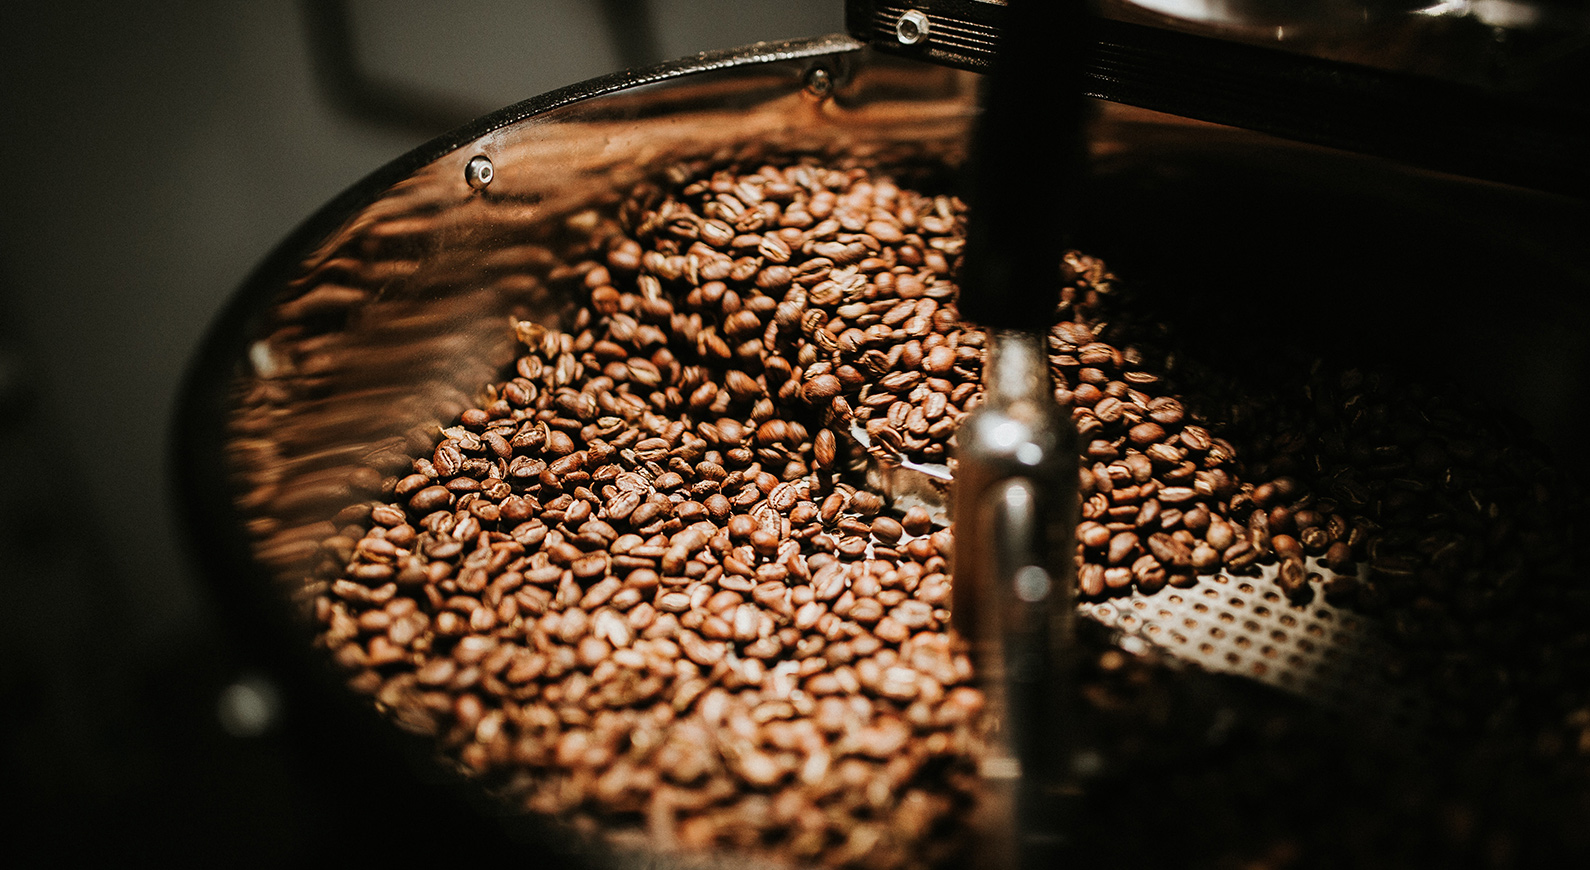 自宅でコーヒー豆を挽く デロンギのコーン式グラインダー Kg364j を買ってみた 84lifeブログ